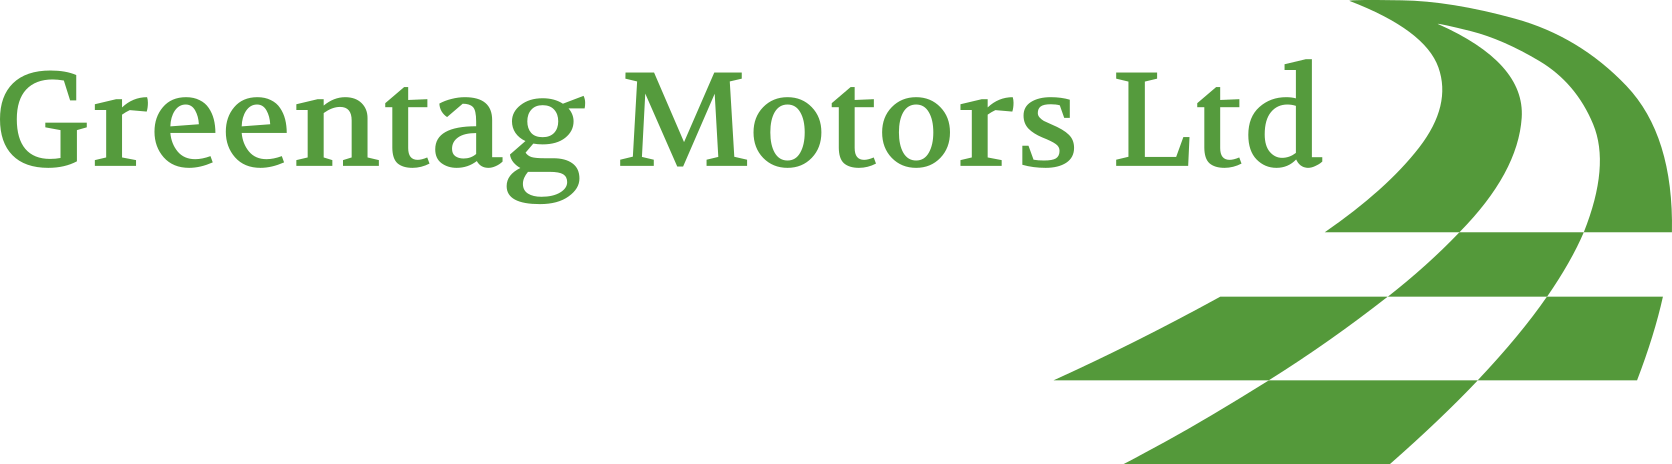 Greentag Motors Ltd Logo